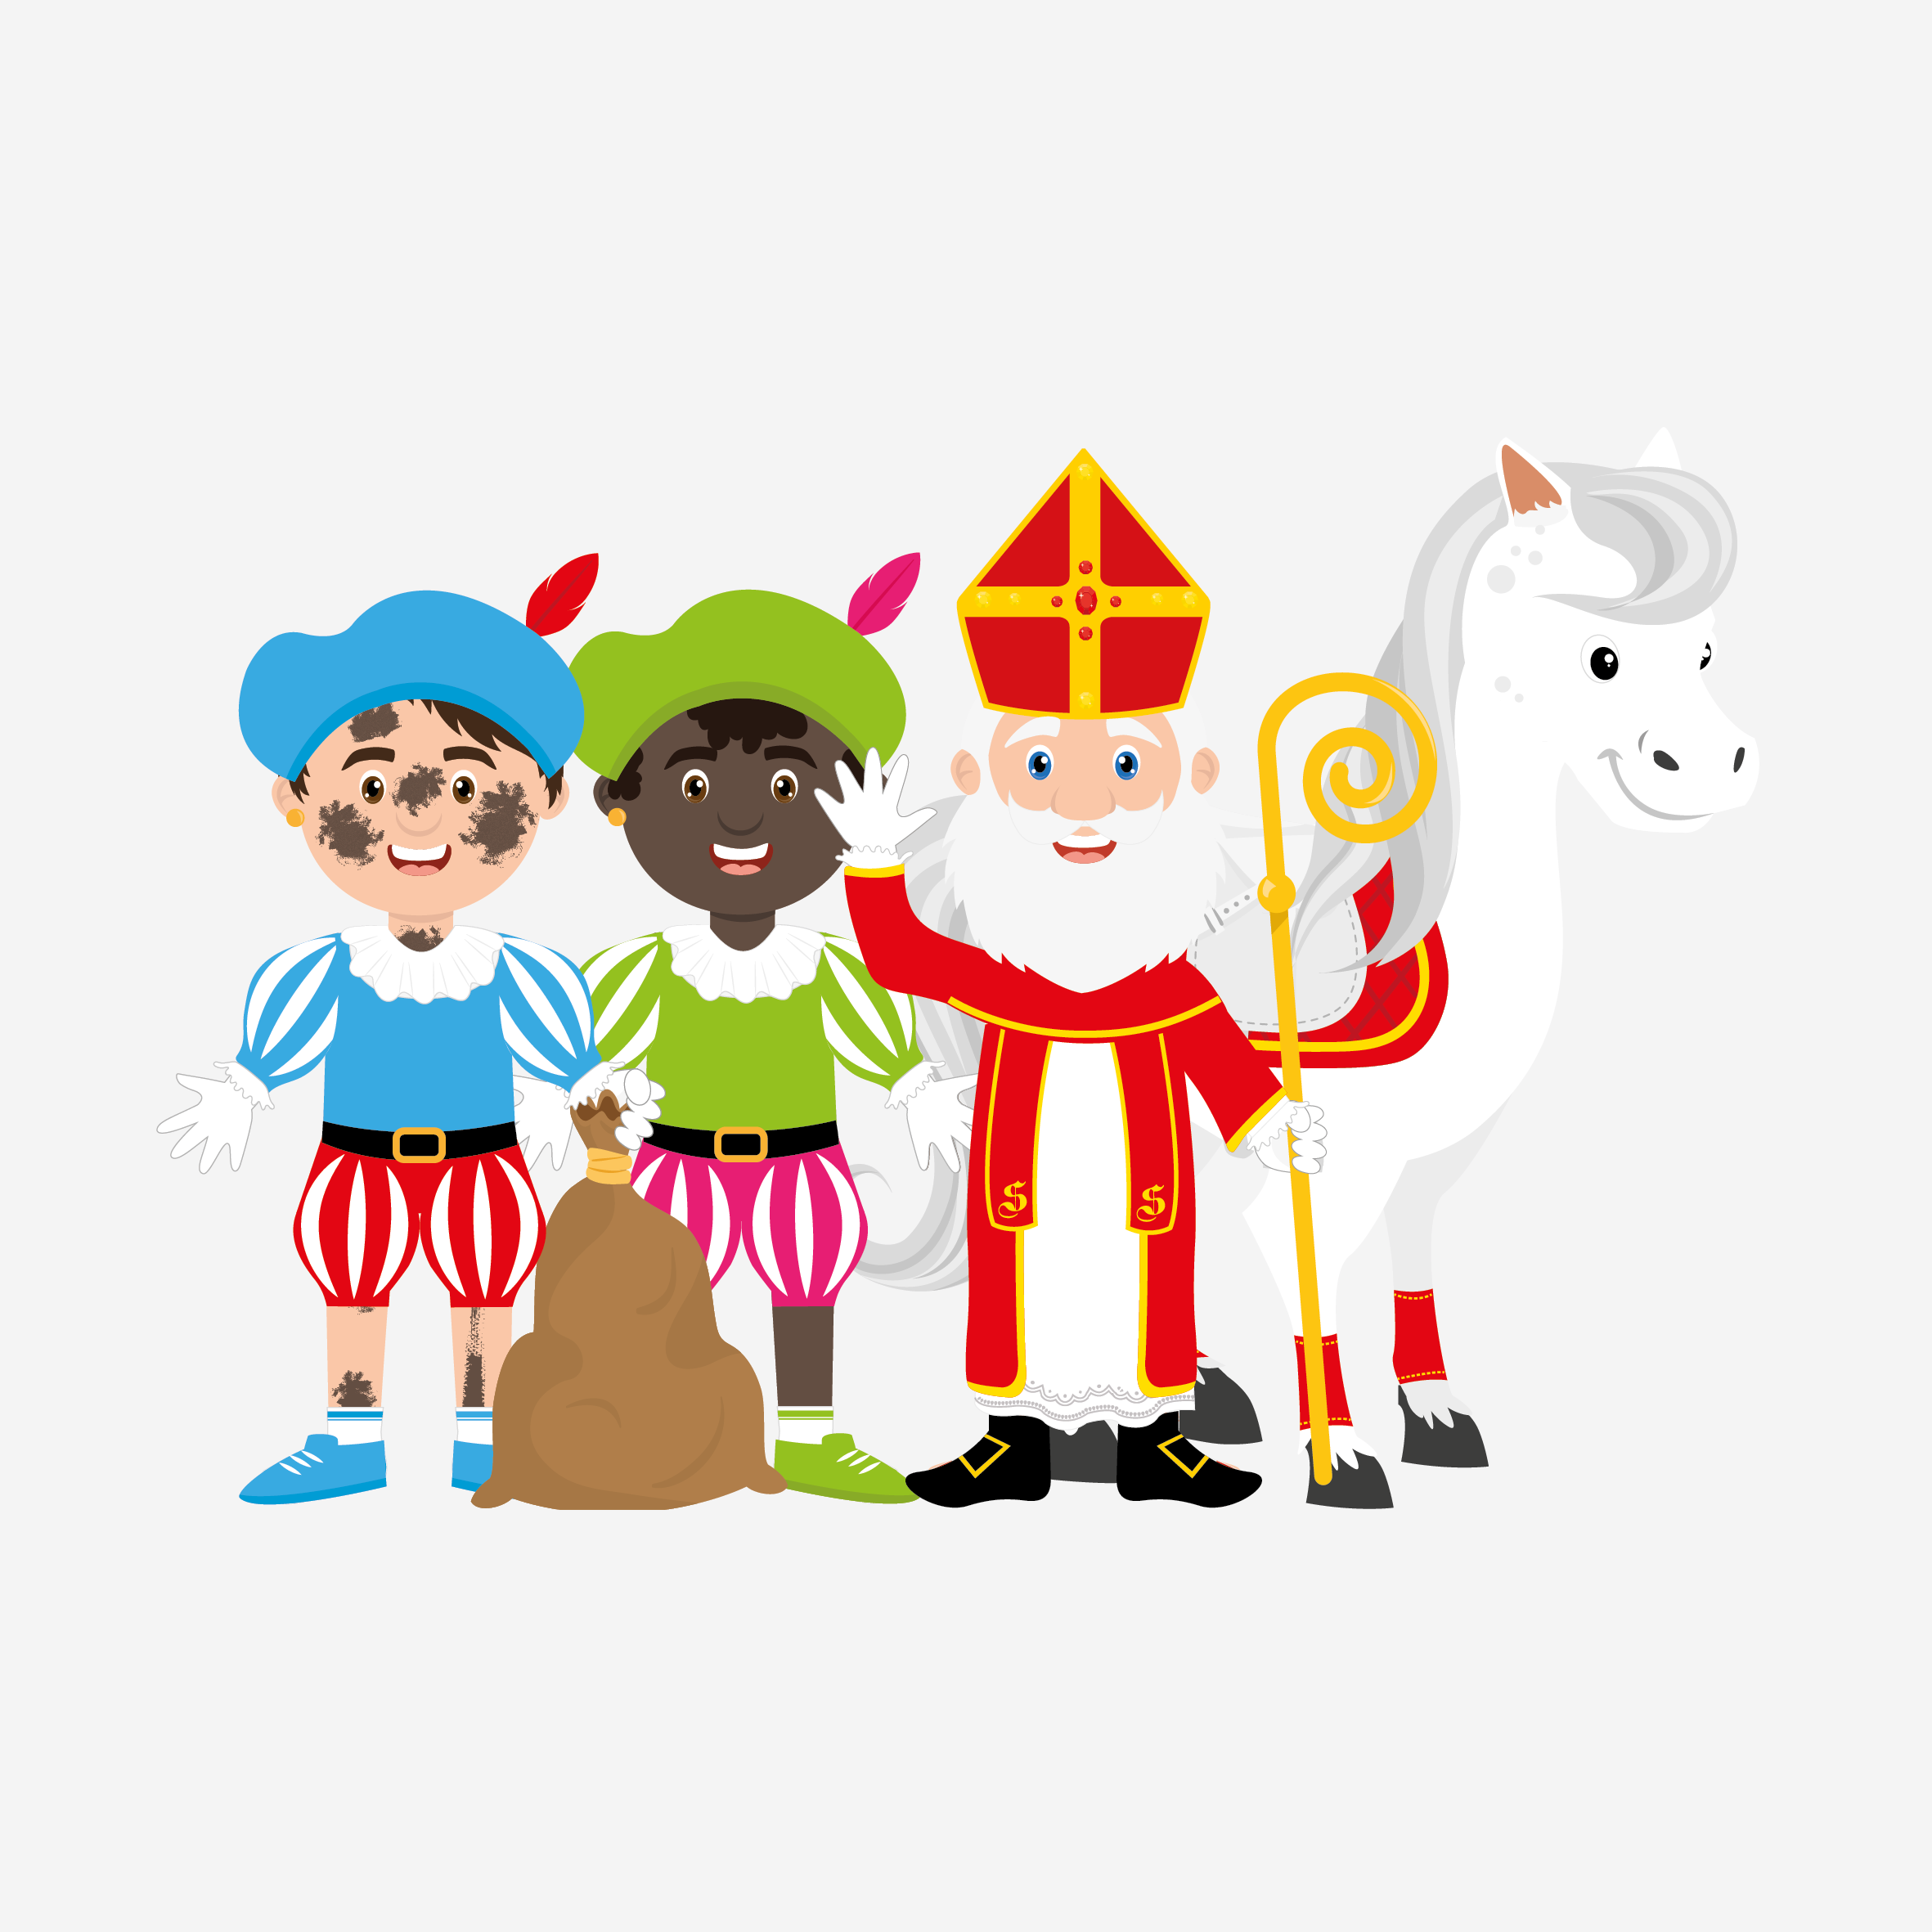 opwinding Vochtig potlood Sinterklaas – tagged "Sint & Piet" – Surya Designs (CommV)